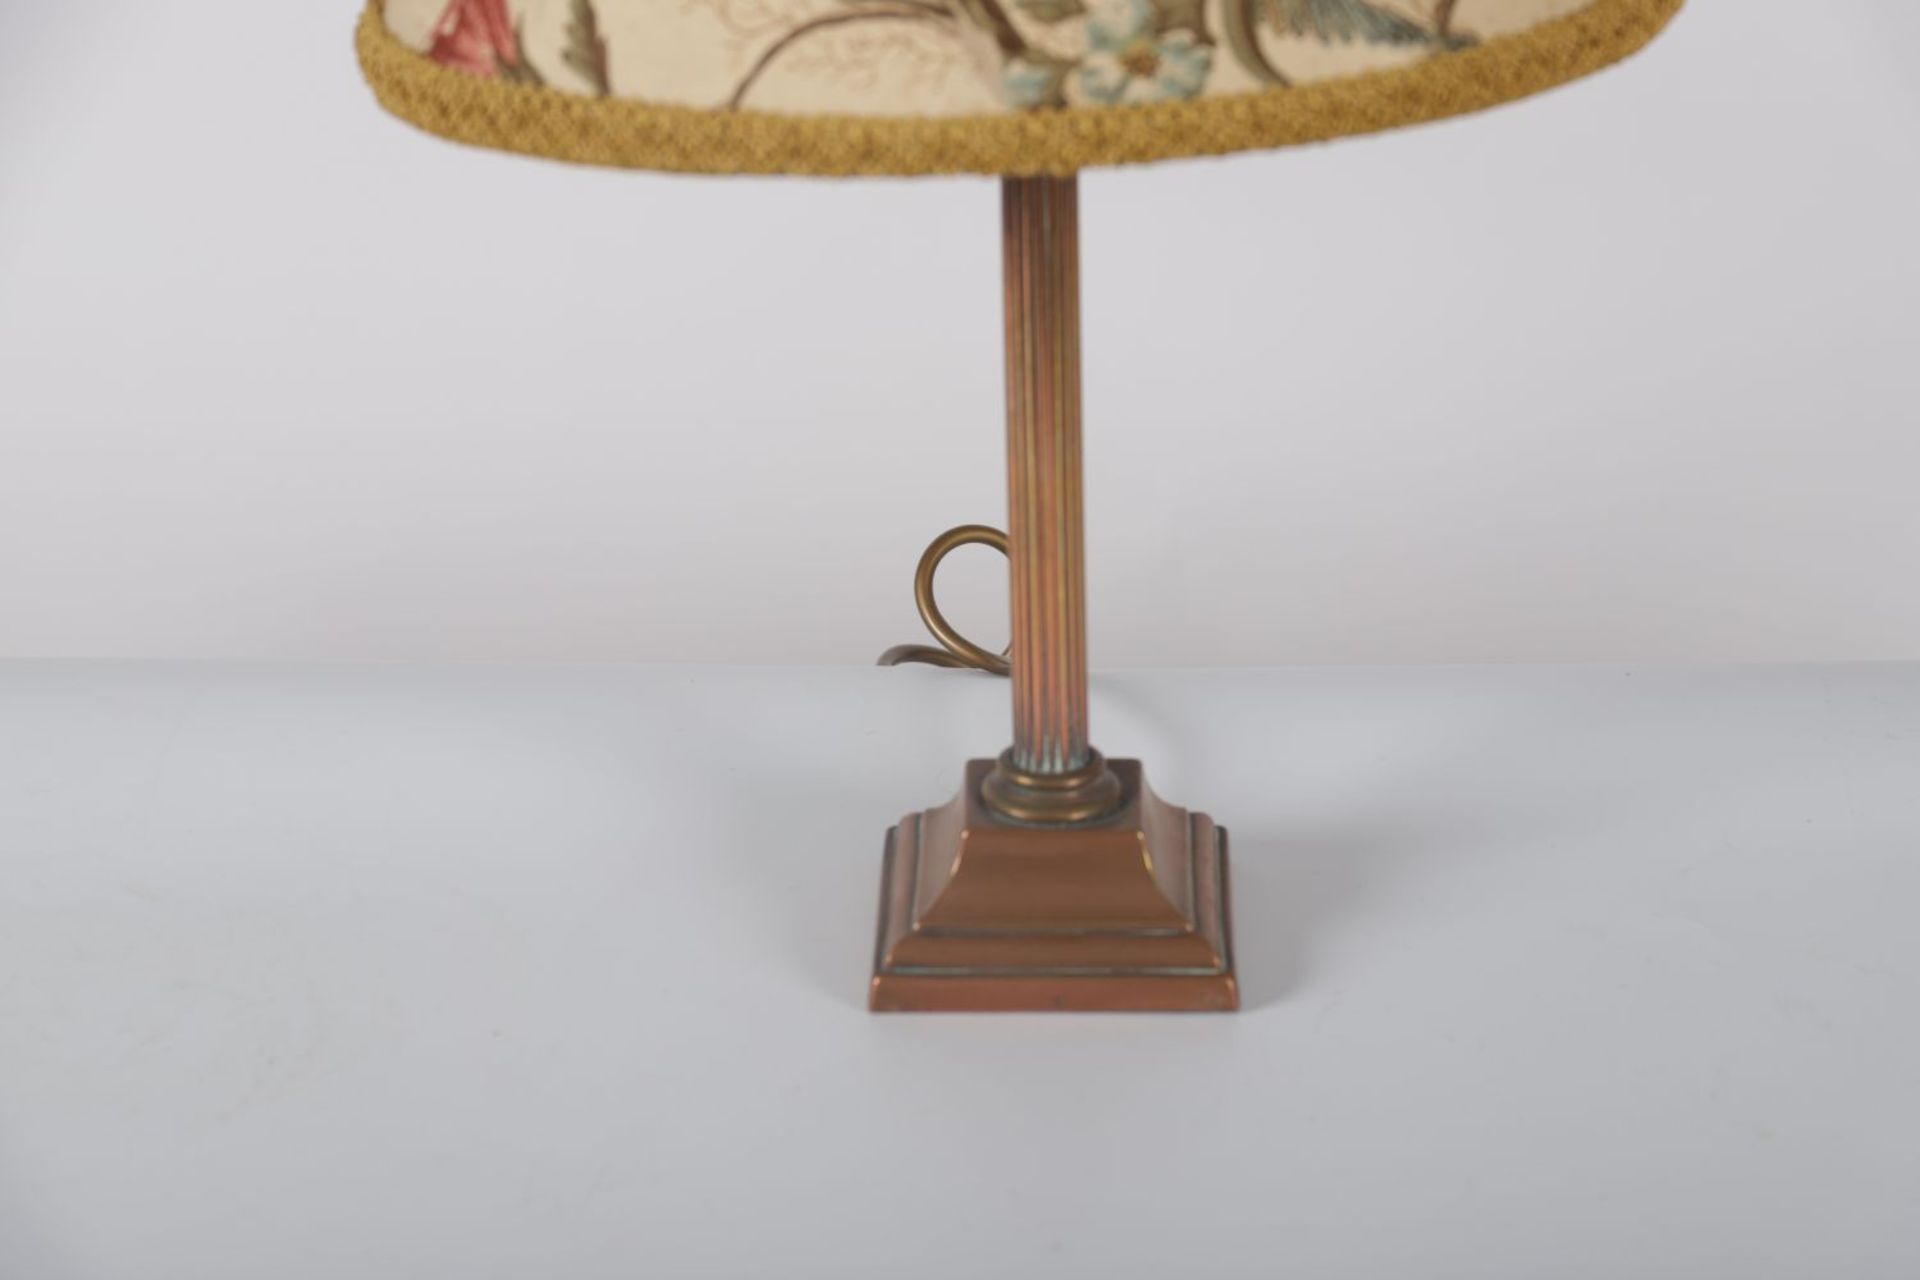 EDWARDIAN CORINTHIAN PILLARED TABLE LAMP - Image 3 of 3